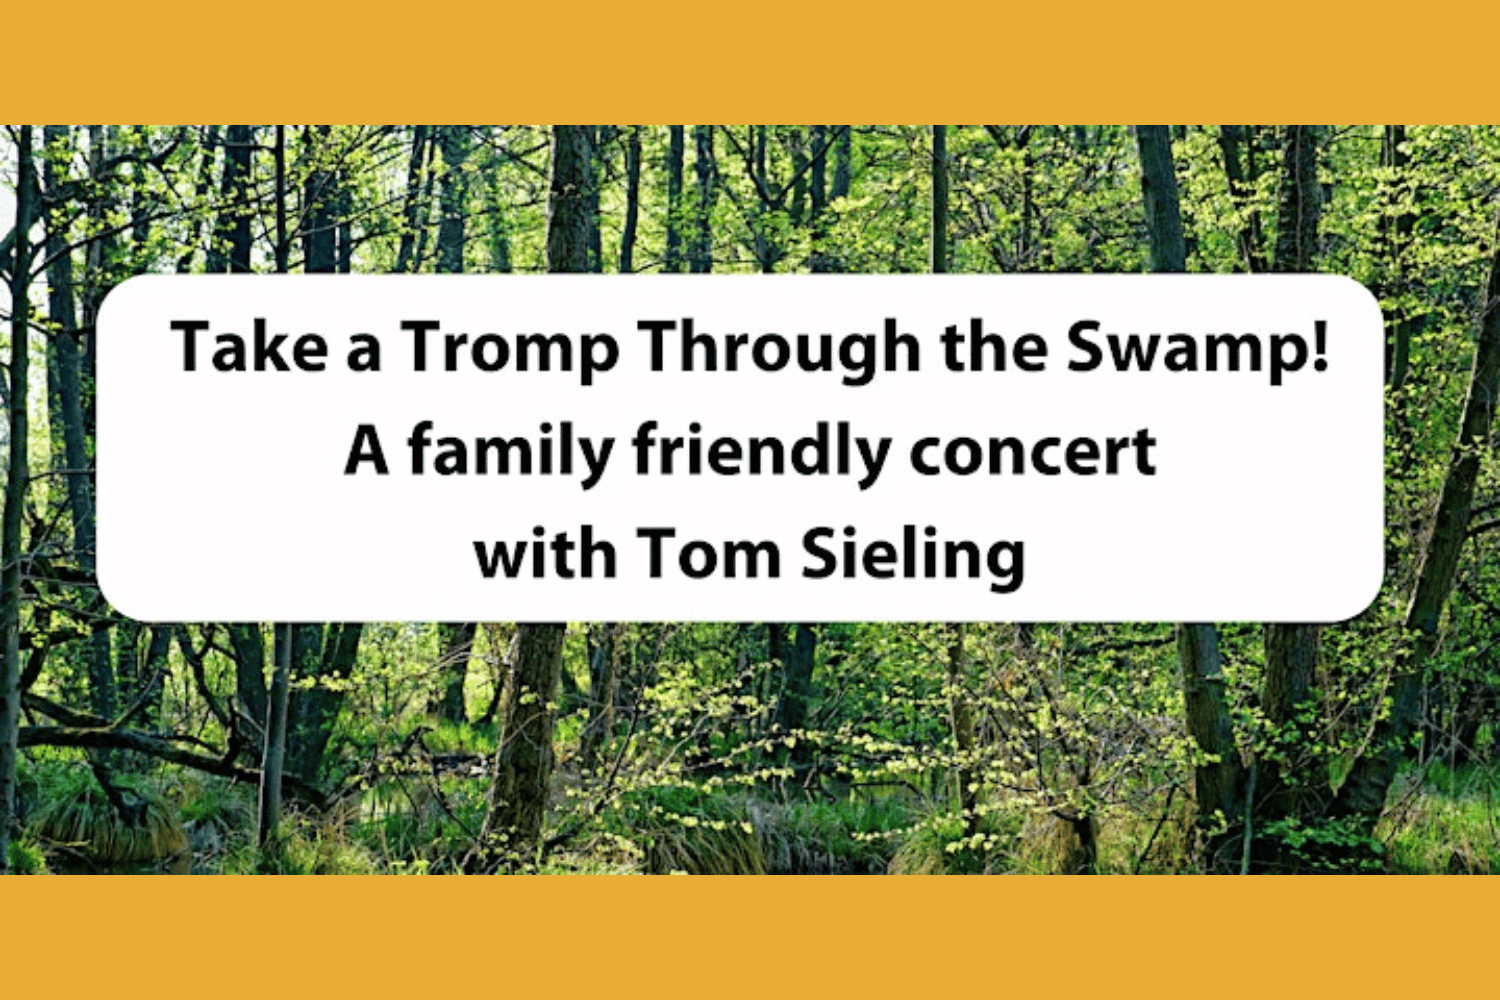 Take a tromp through the swamp